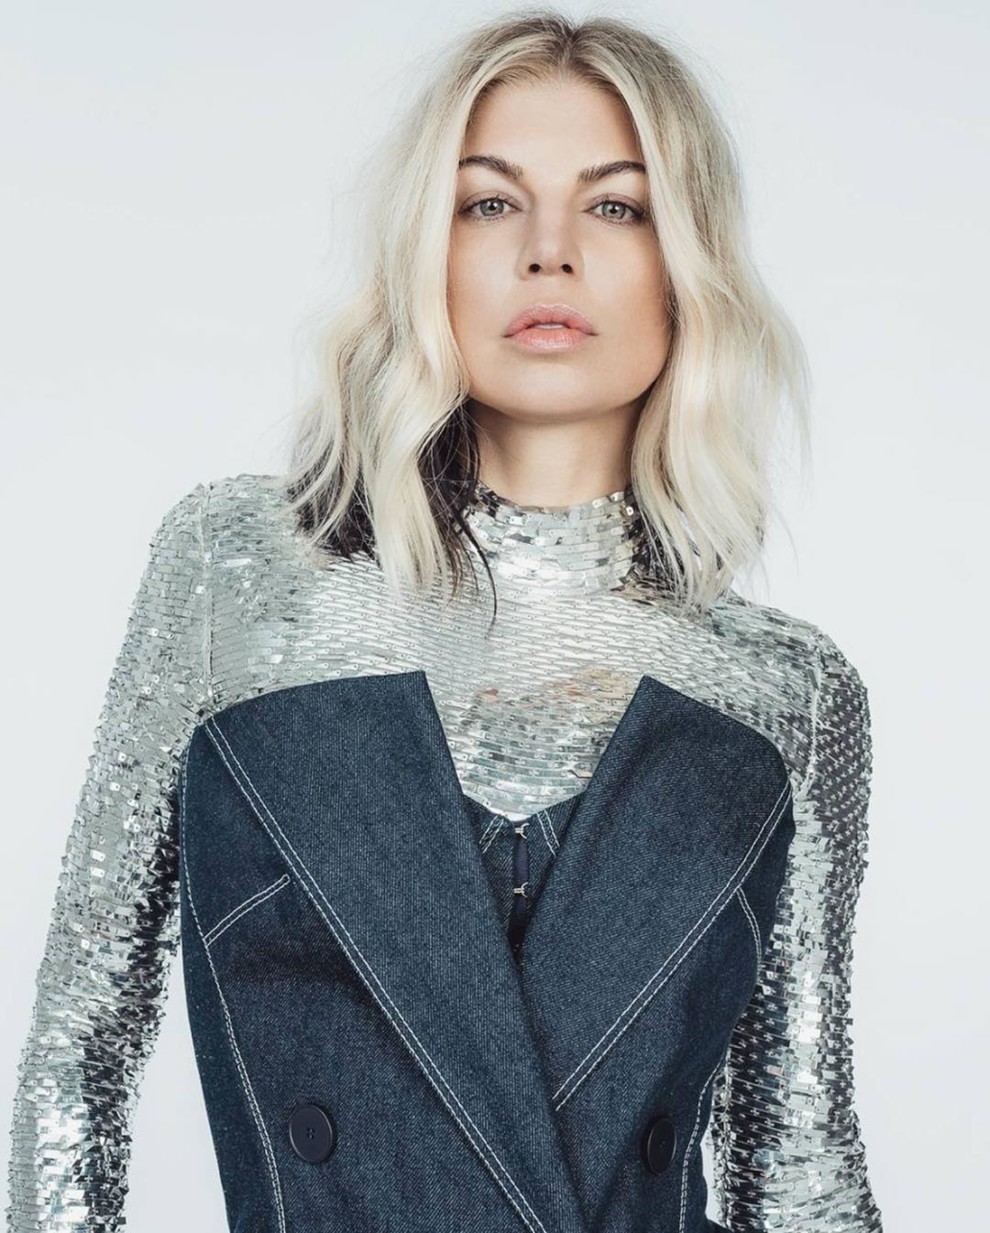 Співачка Фергі знялася для Vogue у сукні української дизайнерки